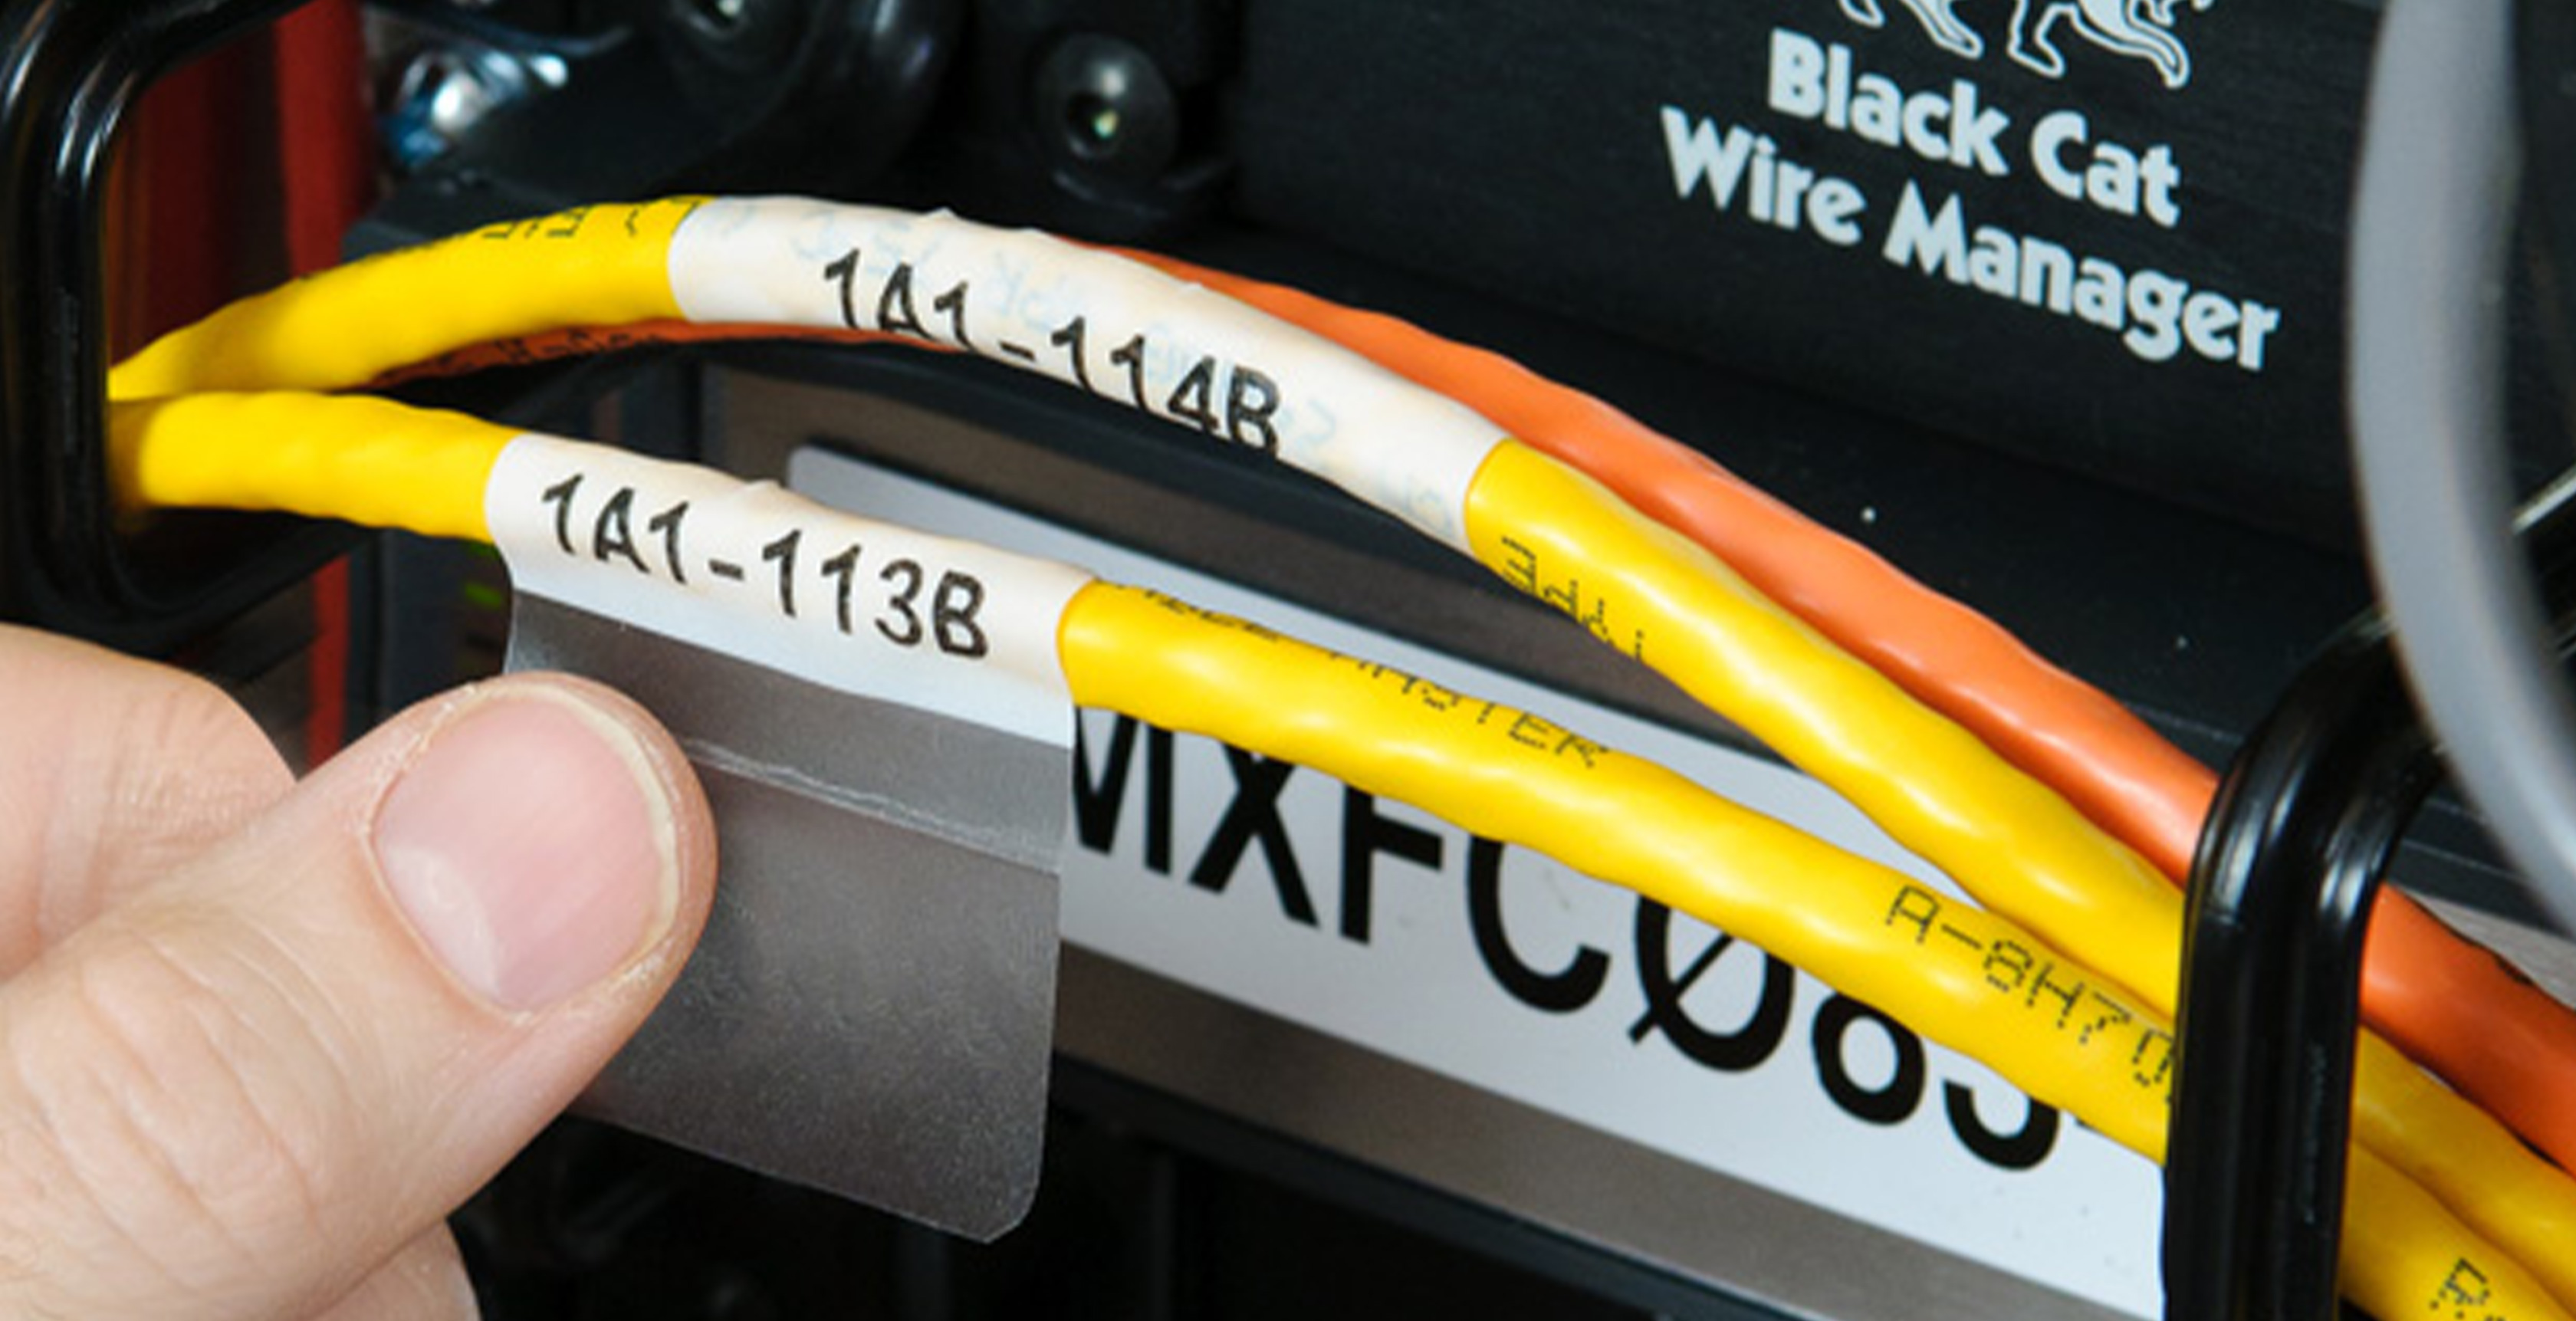 Etiquetas de identificación para cables